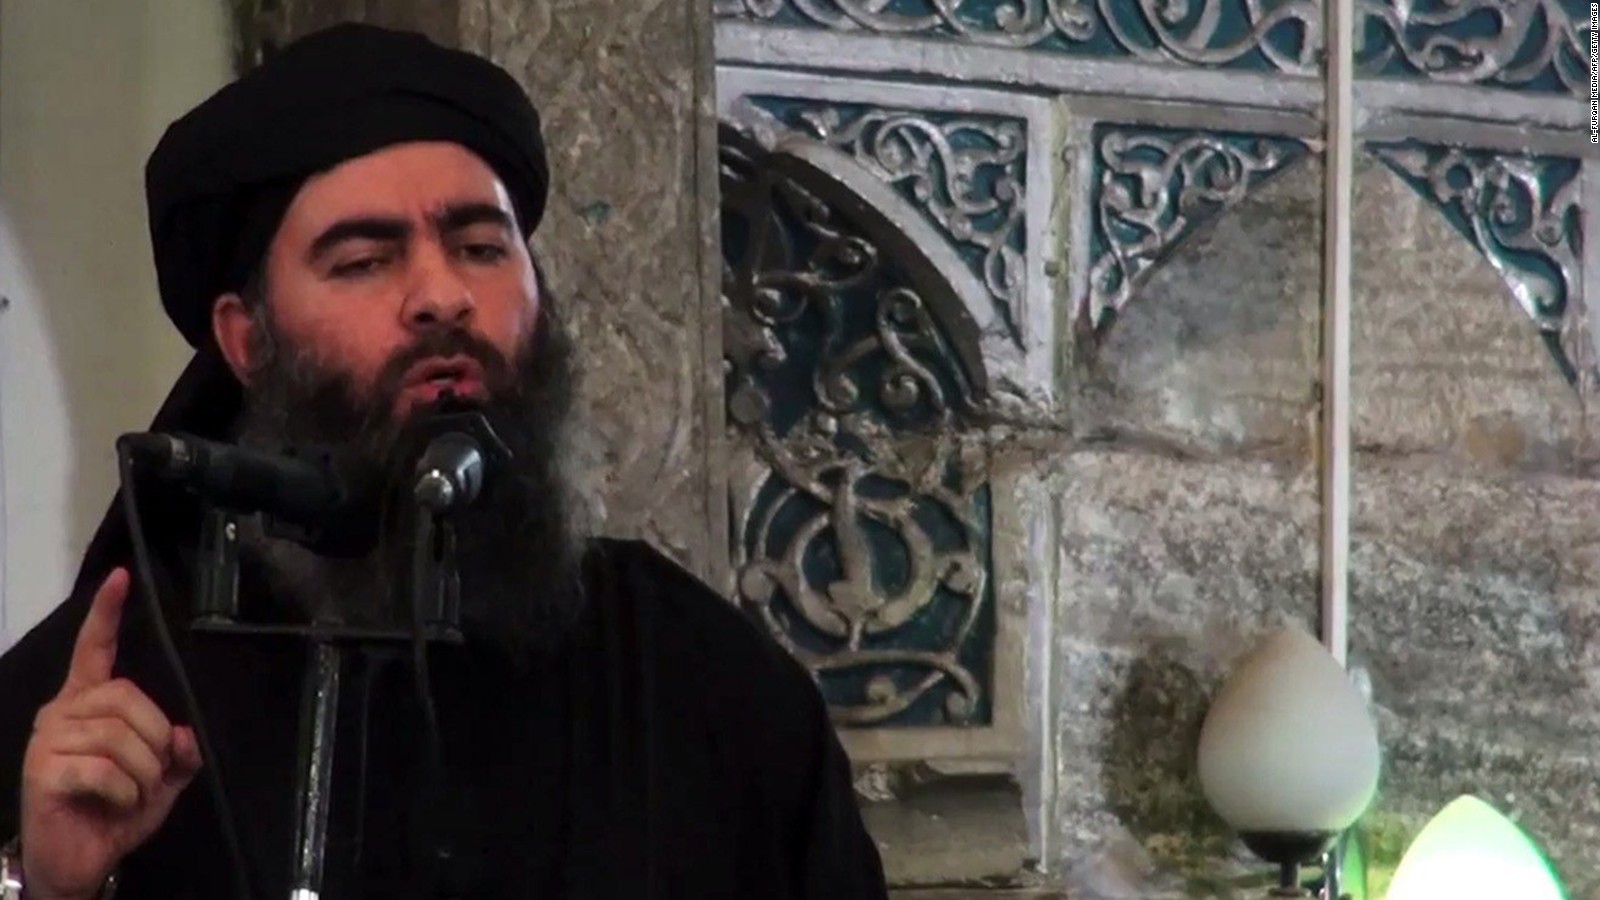   المخابرات العراقية تكشف عن مكان «زعيم داعش» بعد هروبه